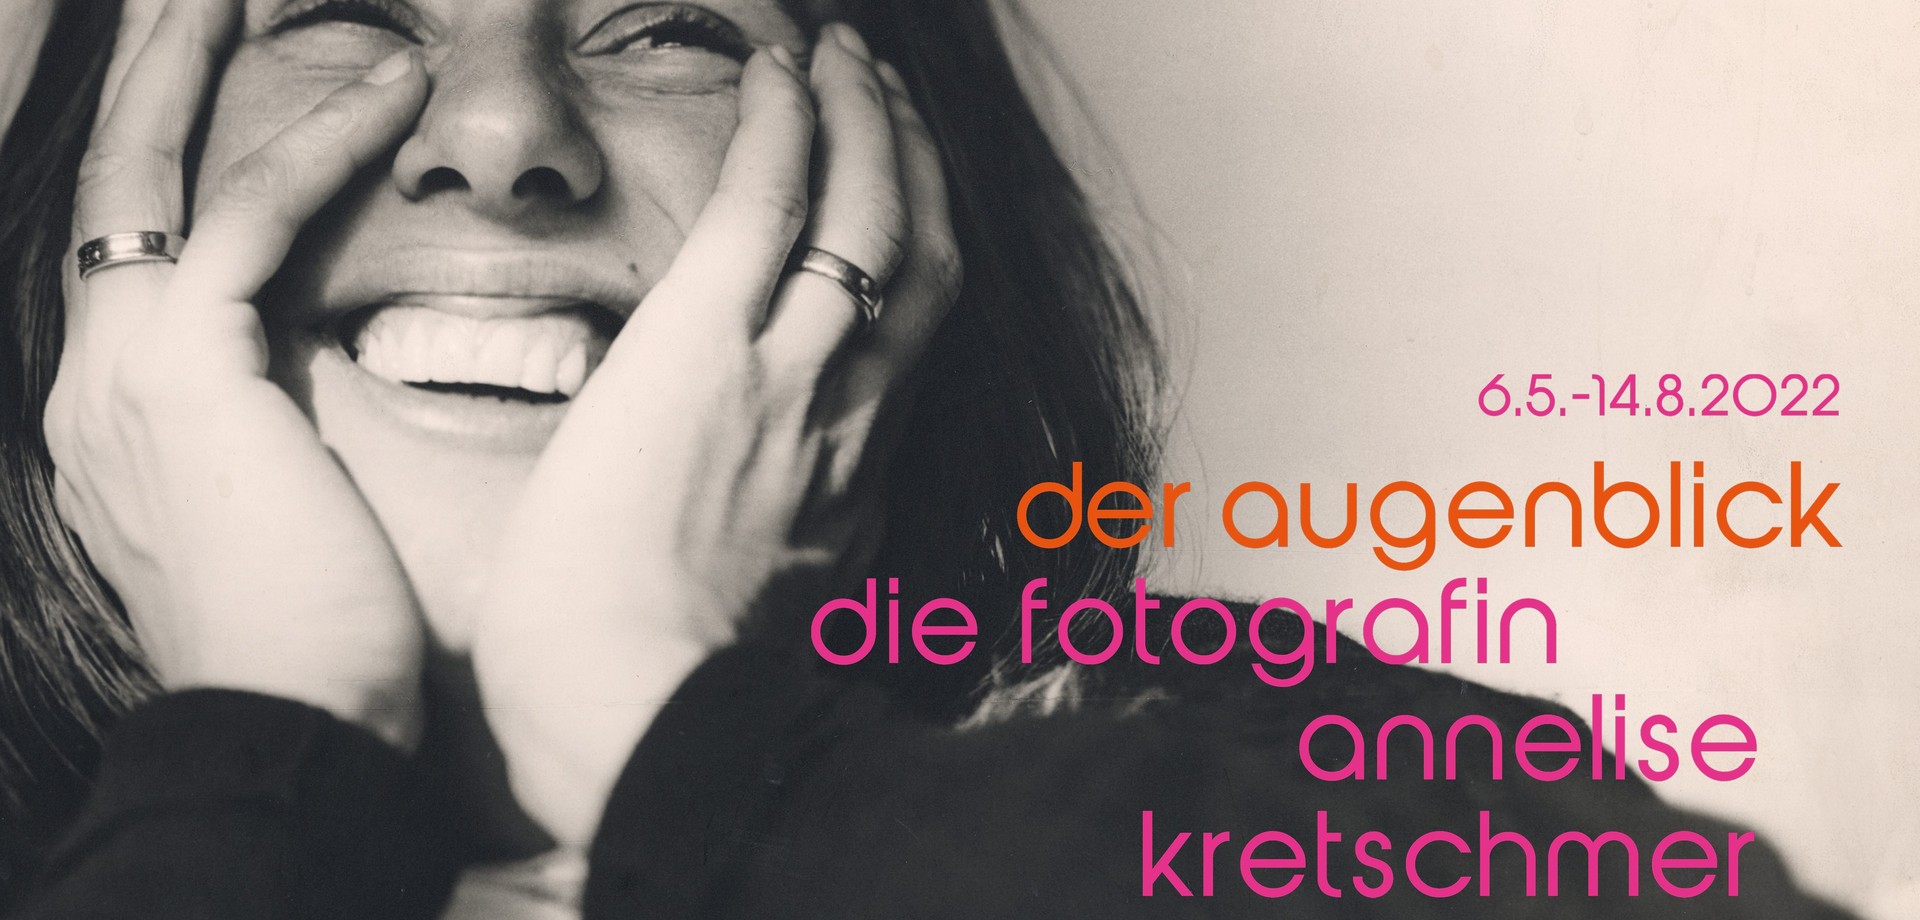 Die lachende Christiane Kretschmer mit dem Ausstellungstitel und der Laufzeit.